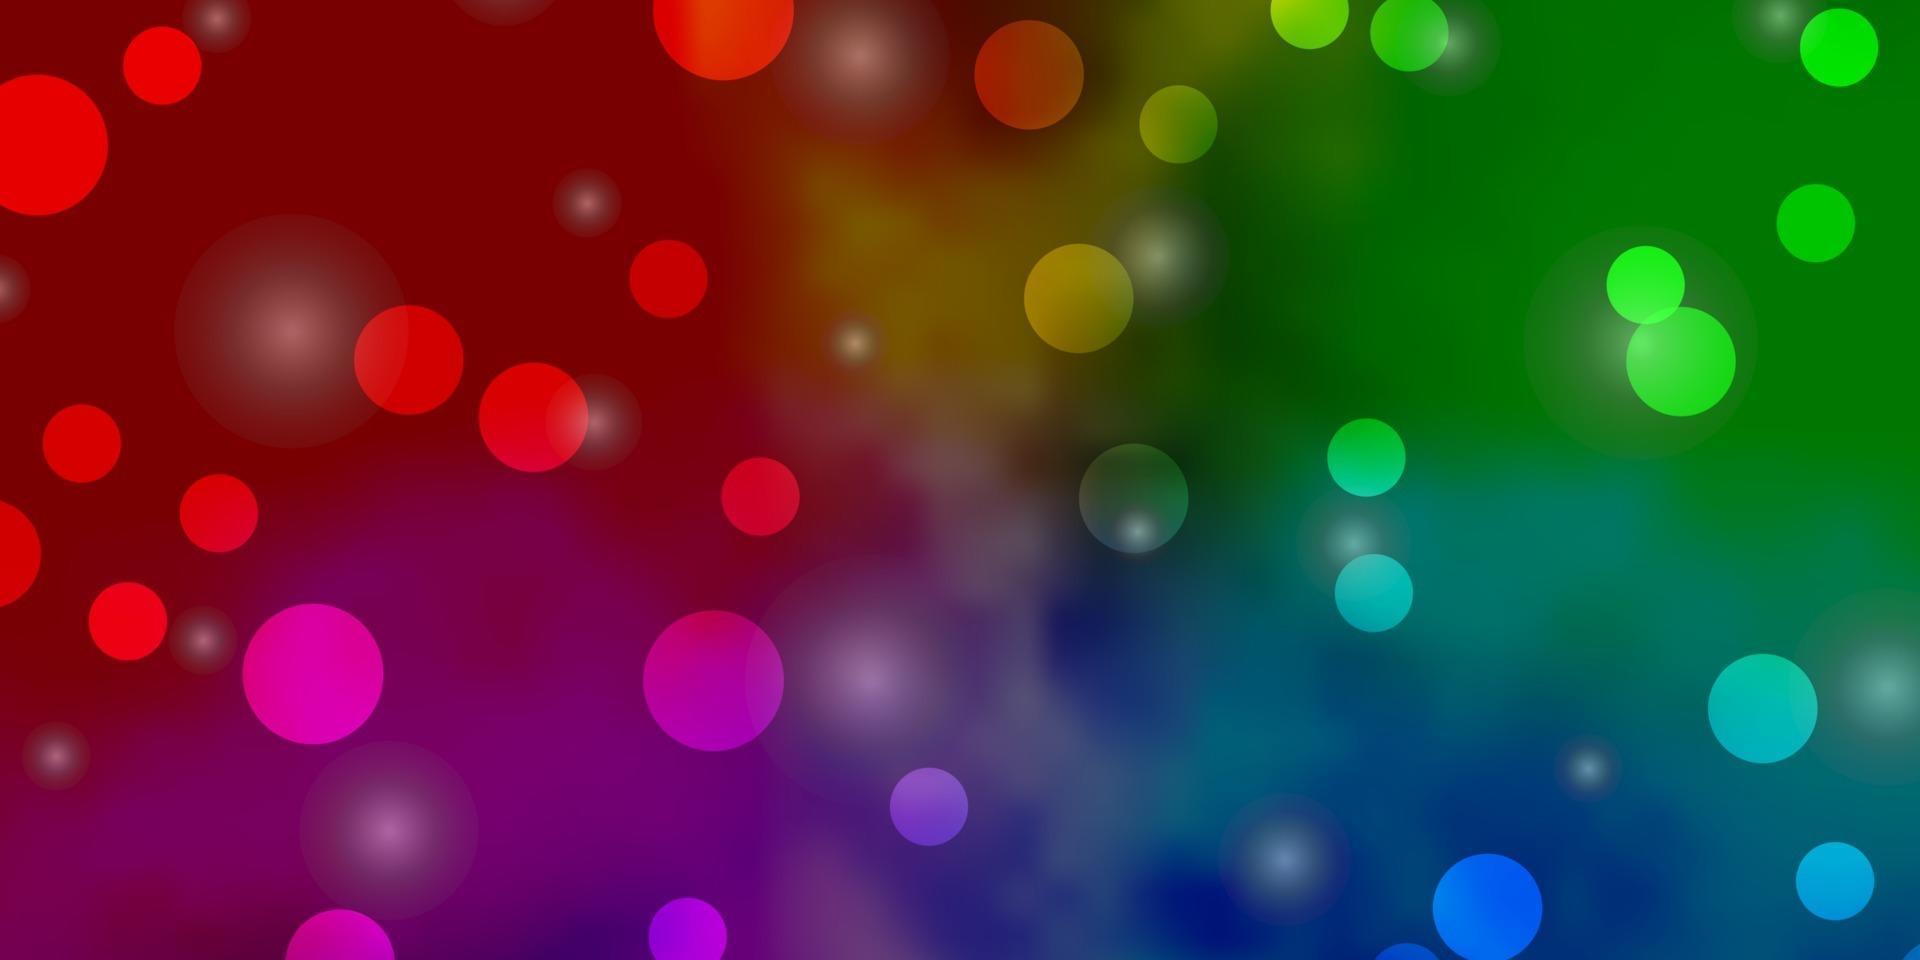 modelo de vetor multicolor de luz com círculos, estrelas.